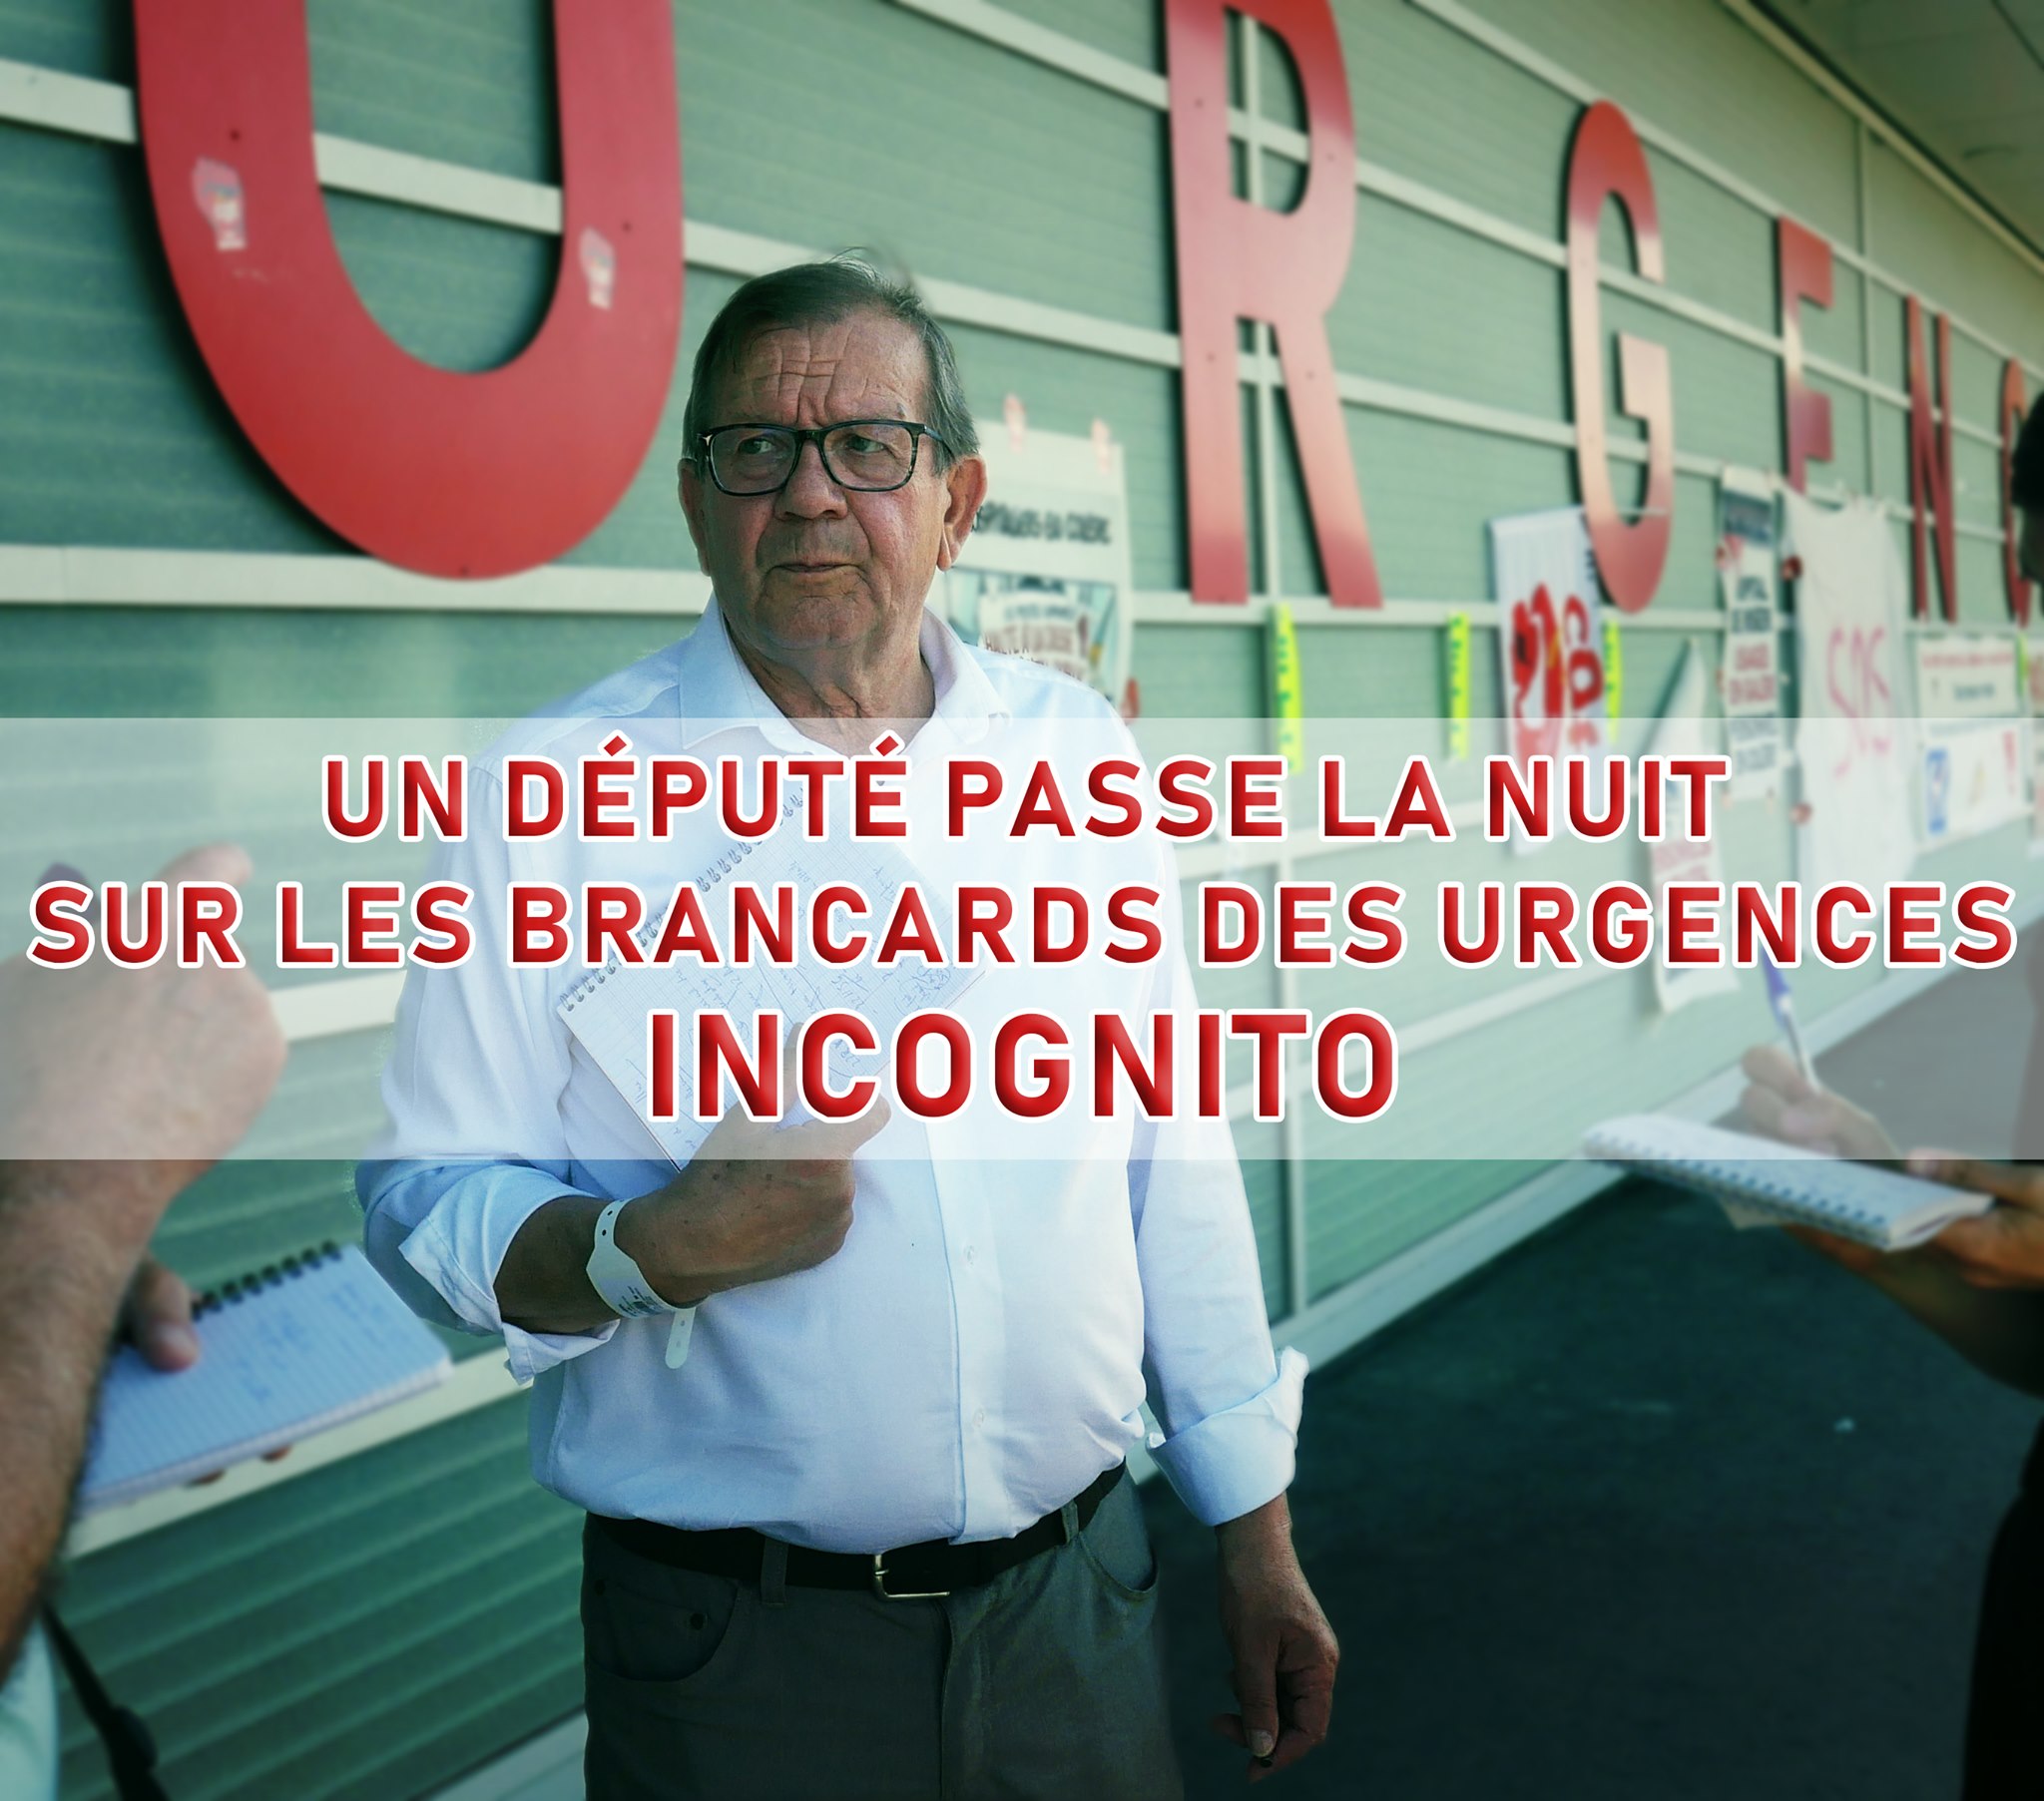 Le député Alain Bruneel (PCF) passe six heures aux urgences de Douai et dénonce une situation "dramatique"